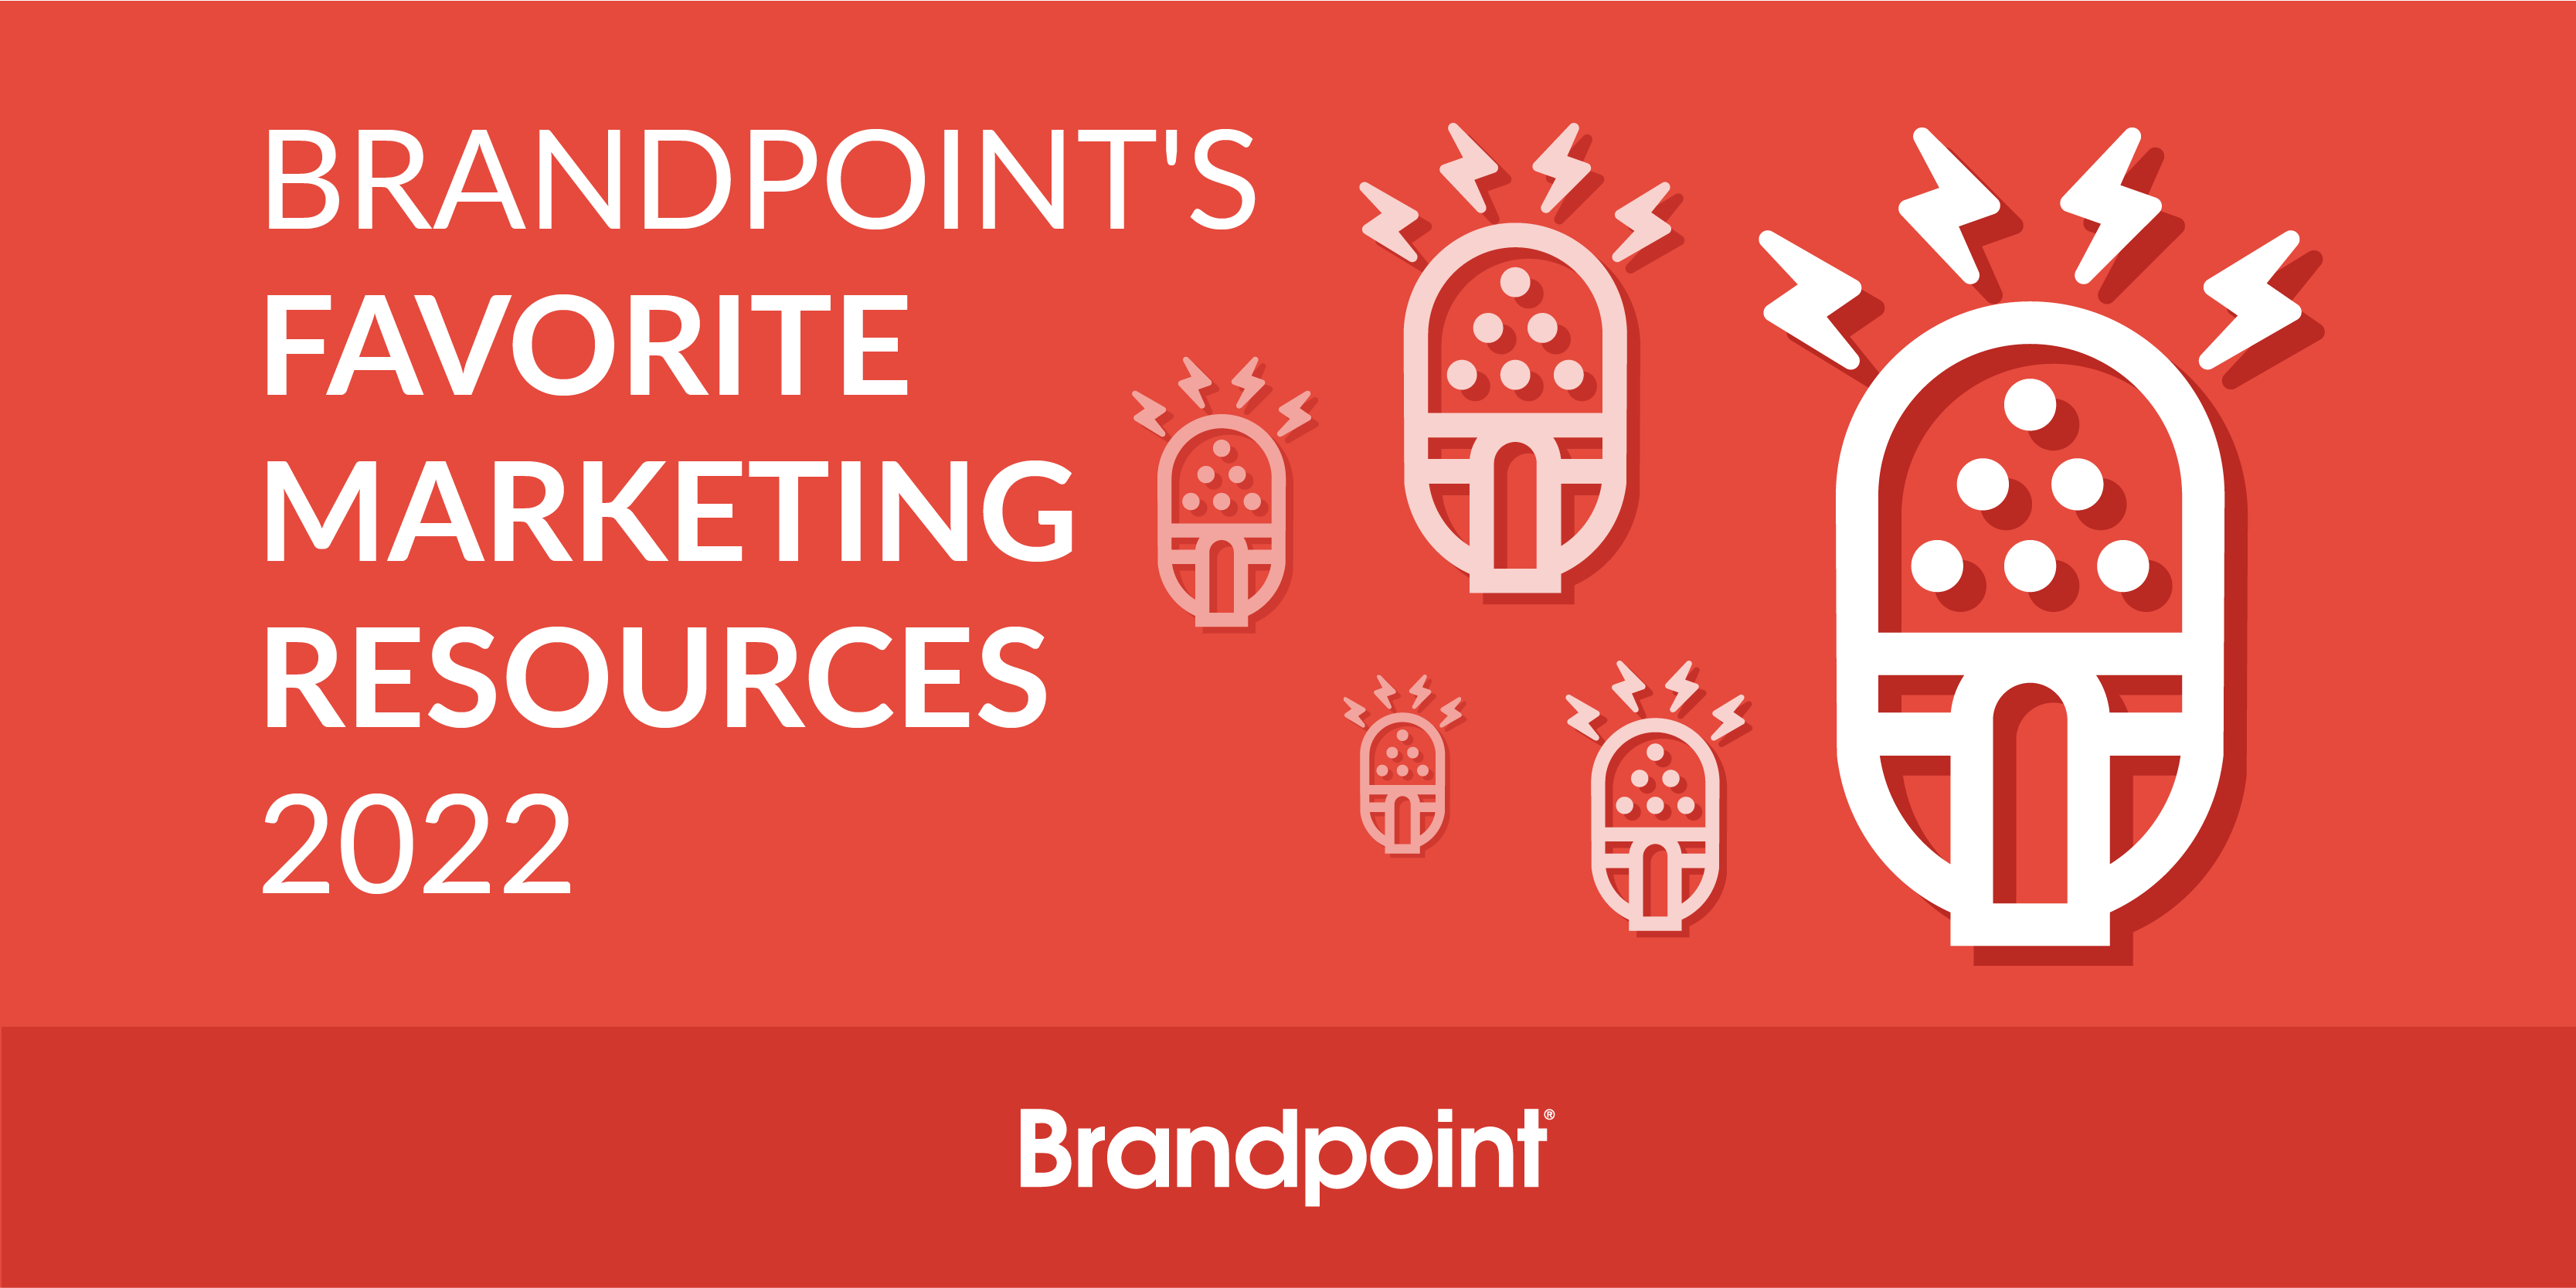 BPT-Blog-Brandpoint's Favorite Marketing Resources 2022-01 (1)